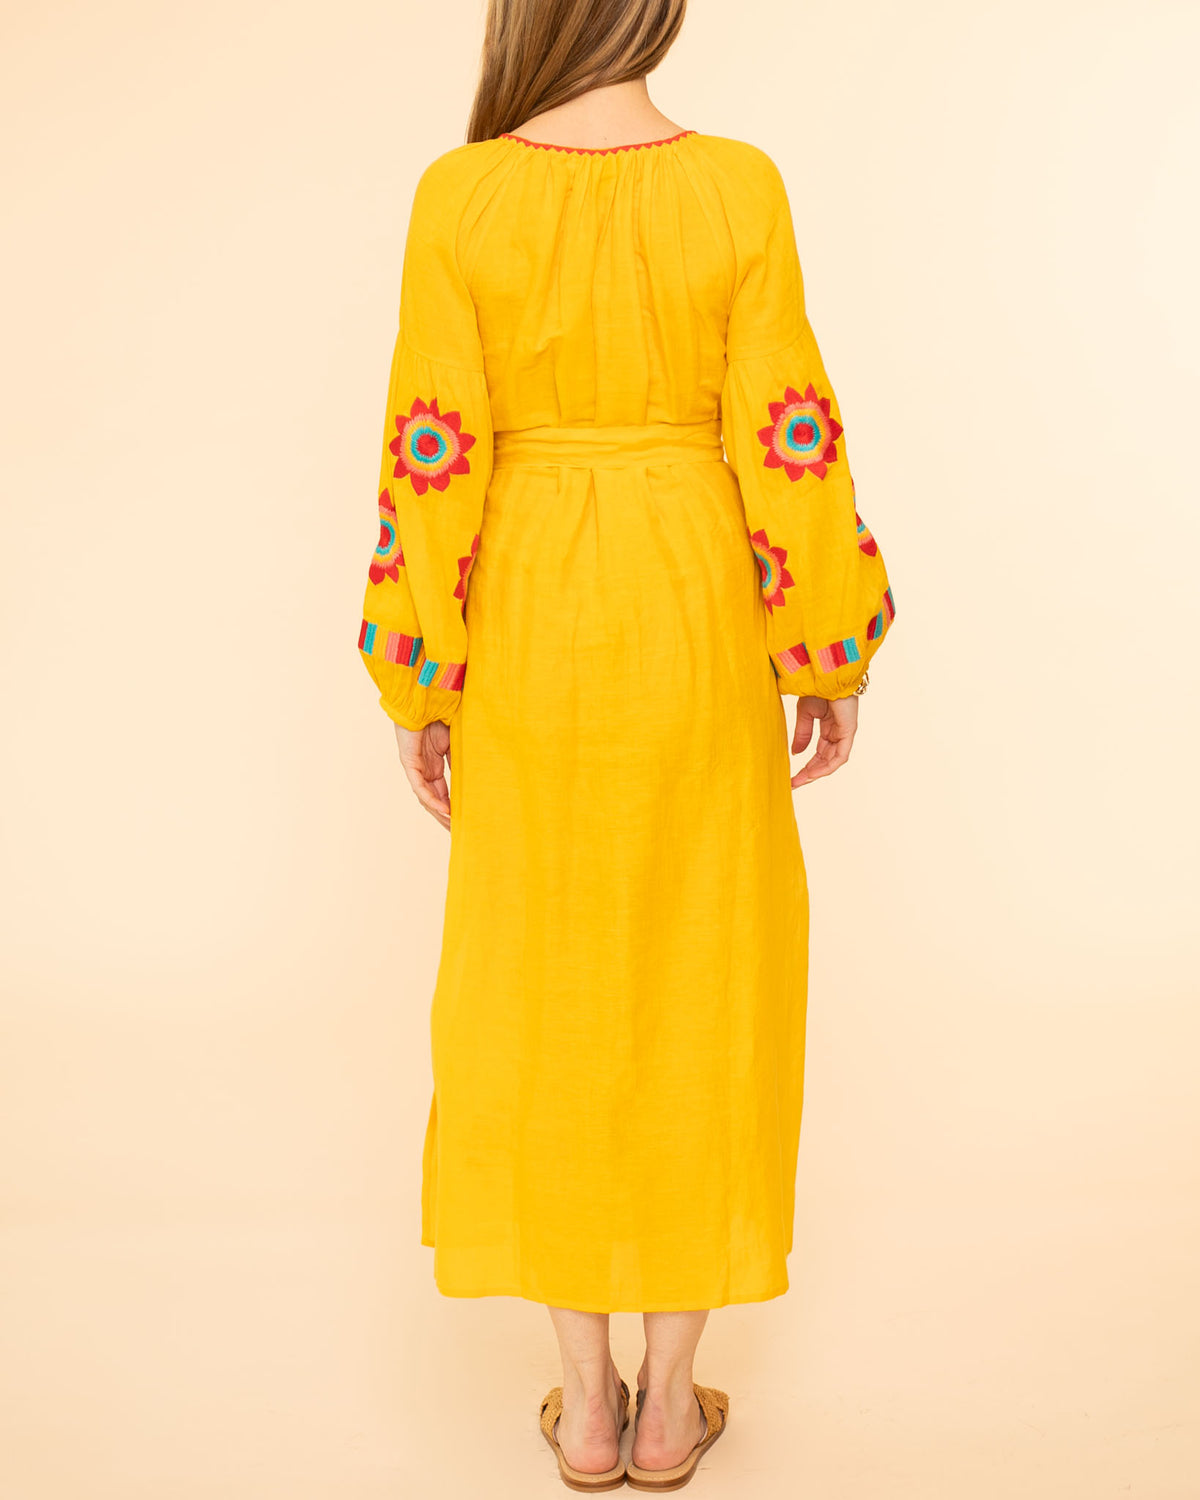 Jocelyn Veronica Dress | Yellow/Red Multi